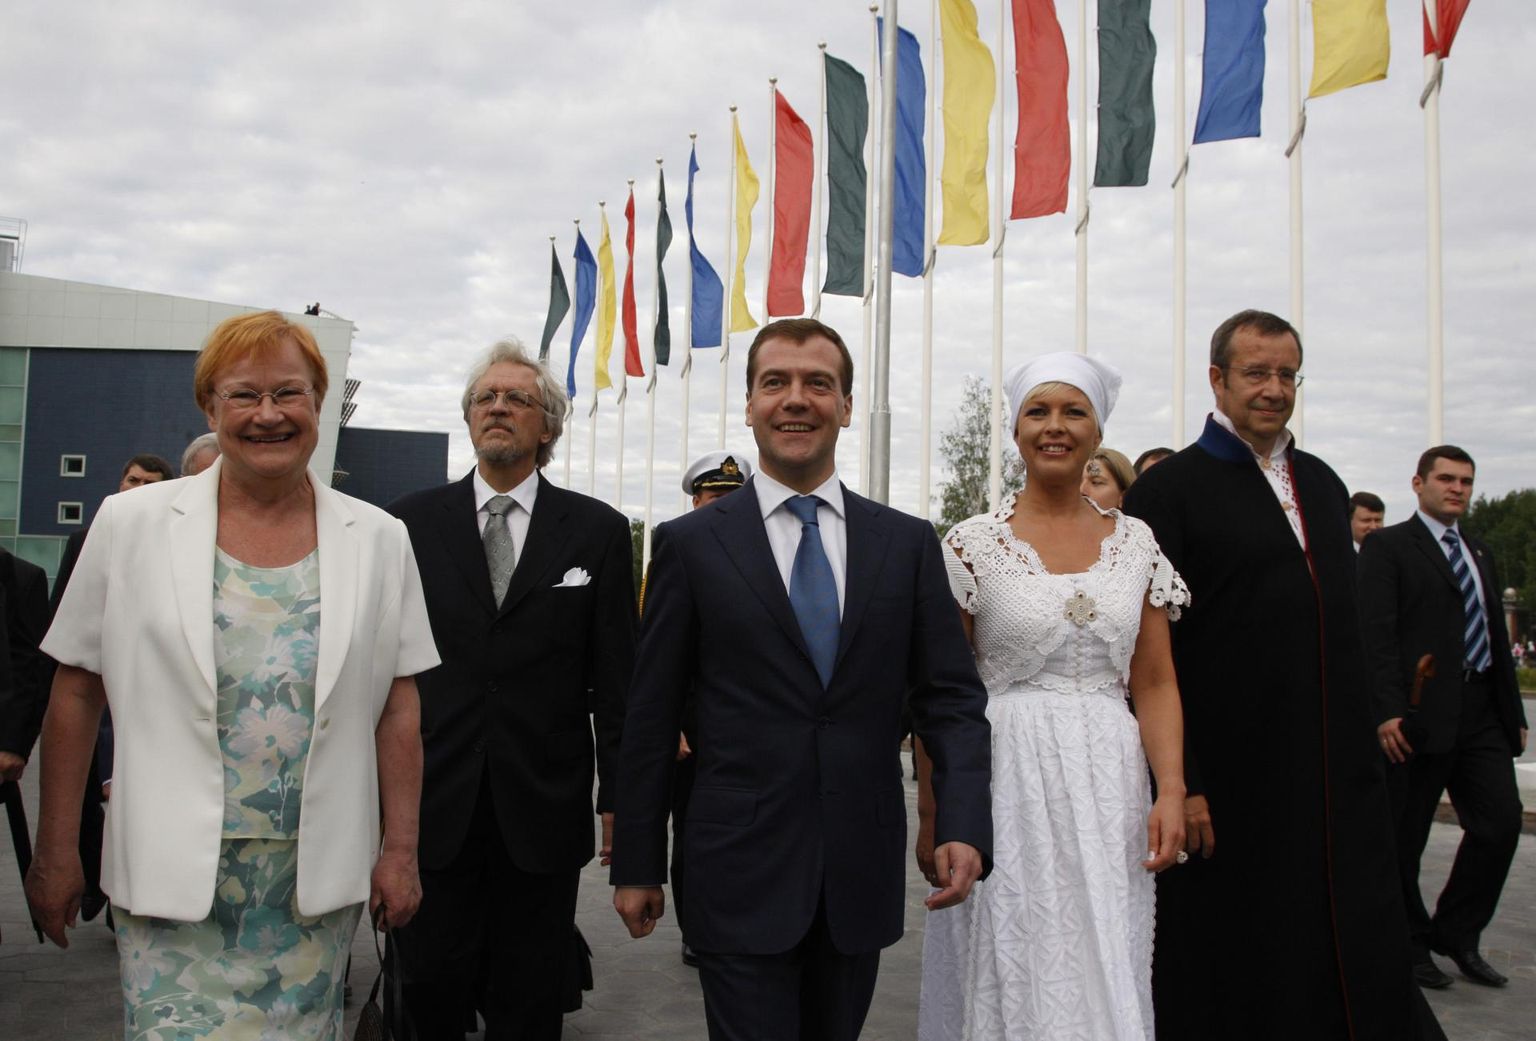 Soome, Vene ja Eesti riigipead 2008. aastal Hantõ-Mansiiskis toimunud soome-ugri maailmakongressil.